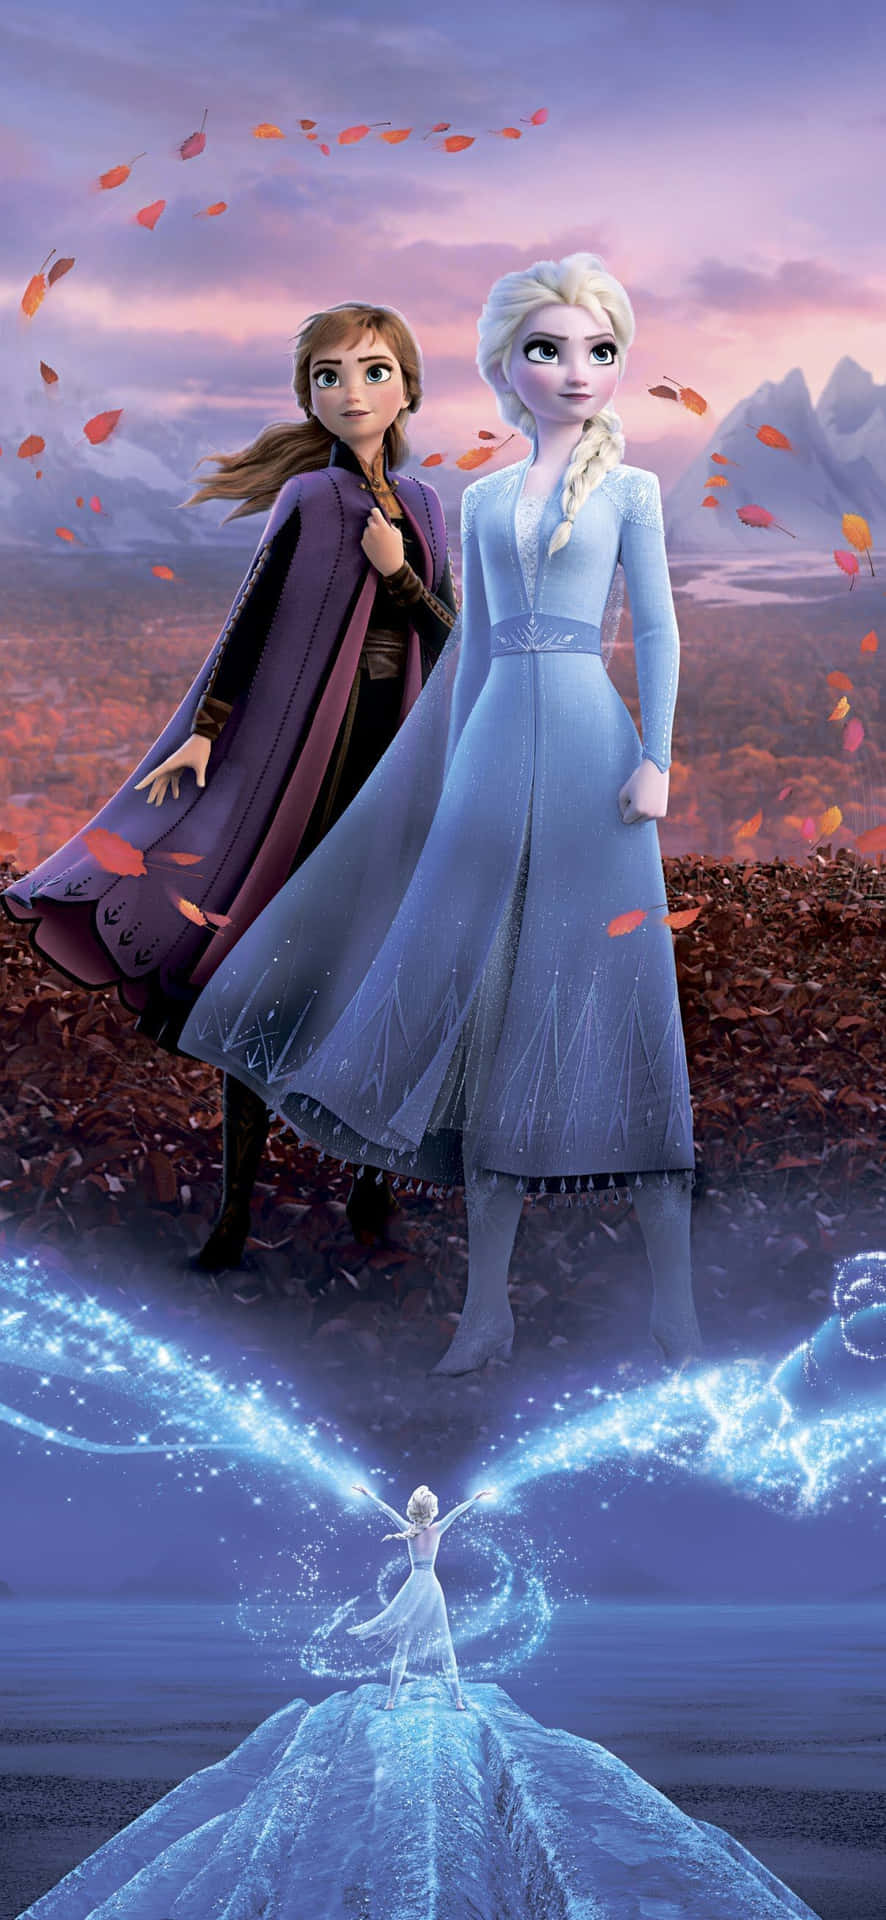 Labellezza Sorprendente Dell'abito Bianco Di Elsa In Frozen 2. Sfondo